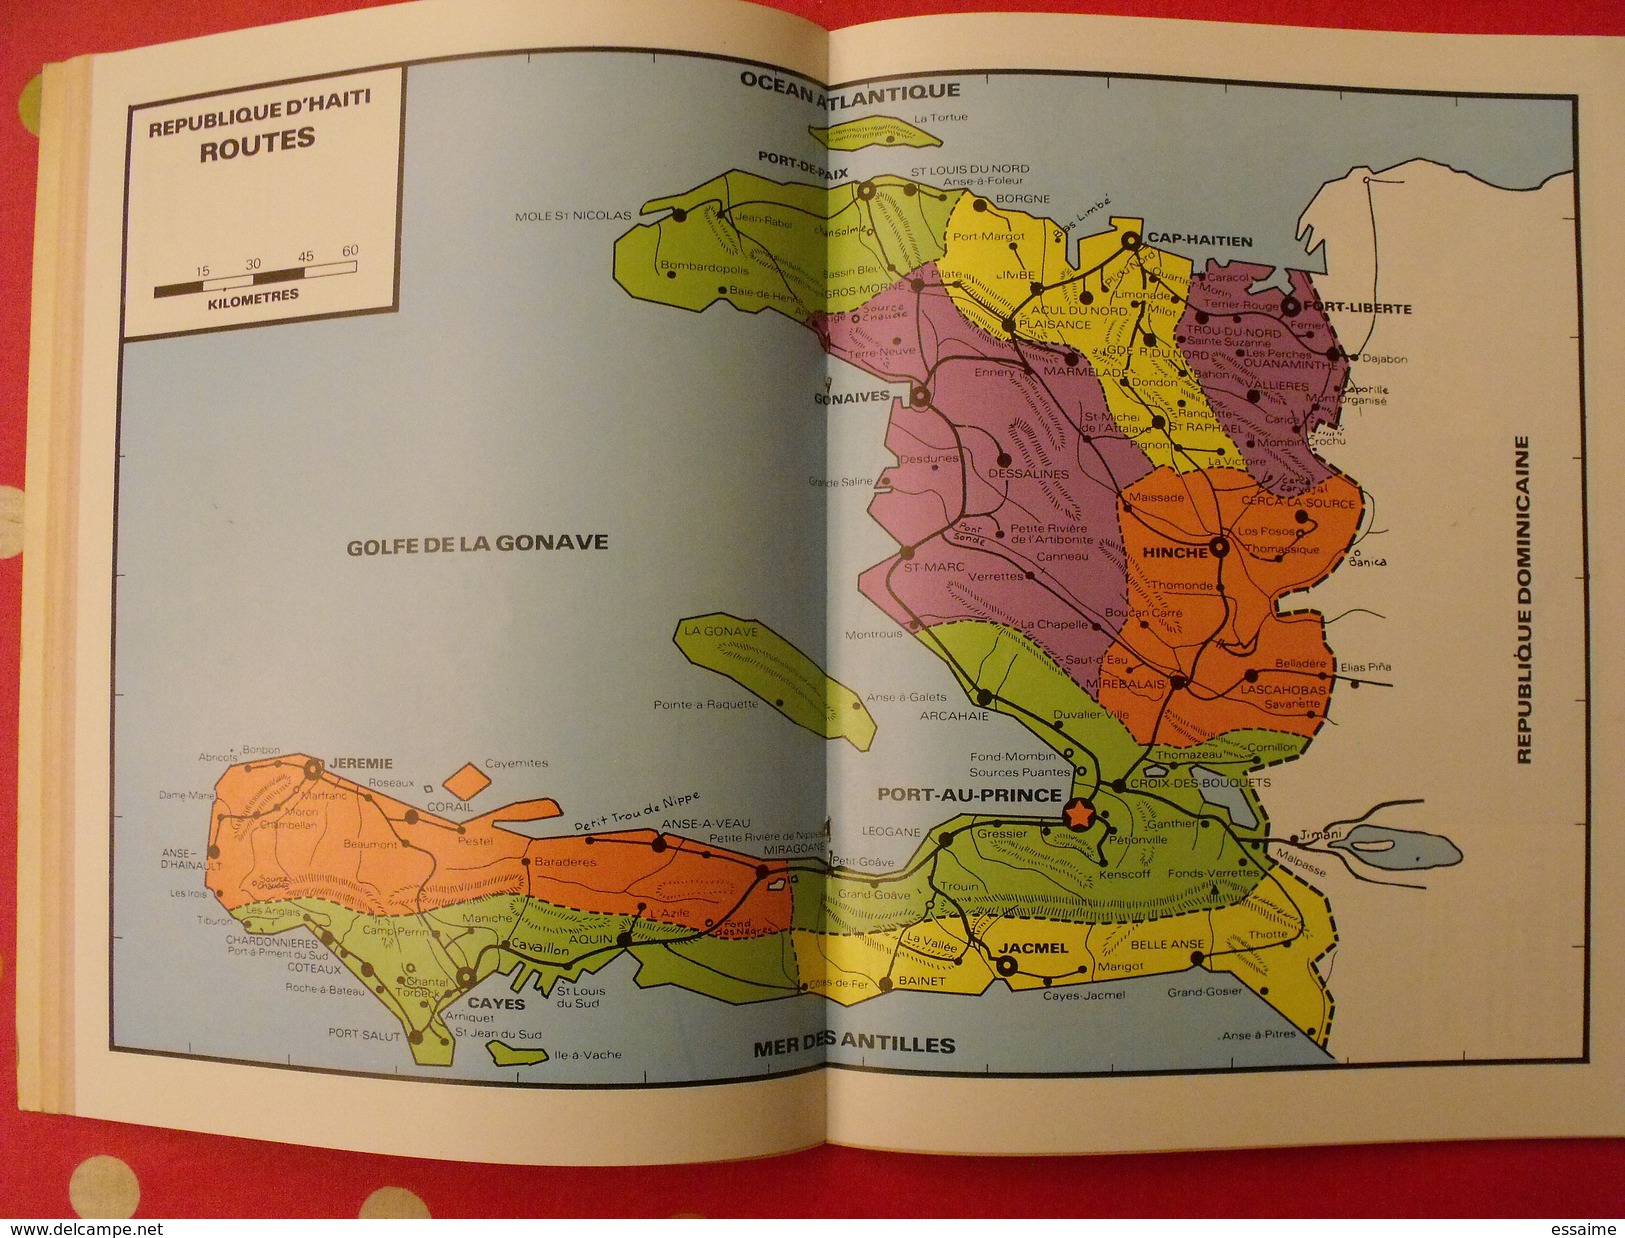 cours de géographie élémentaire et moyen. sur le thème de l'ile et la république d'Haïti. 1973. une curiosité.